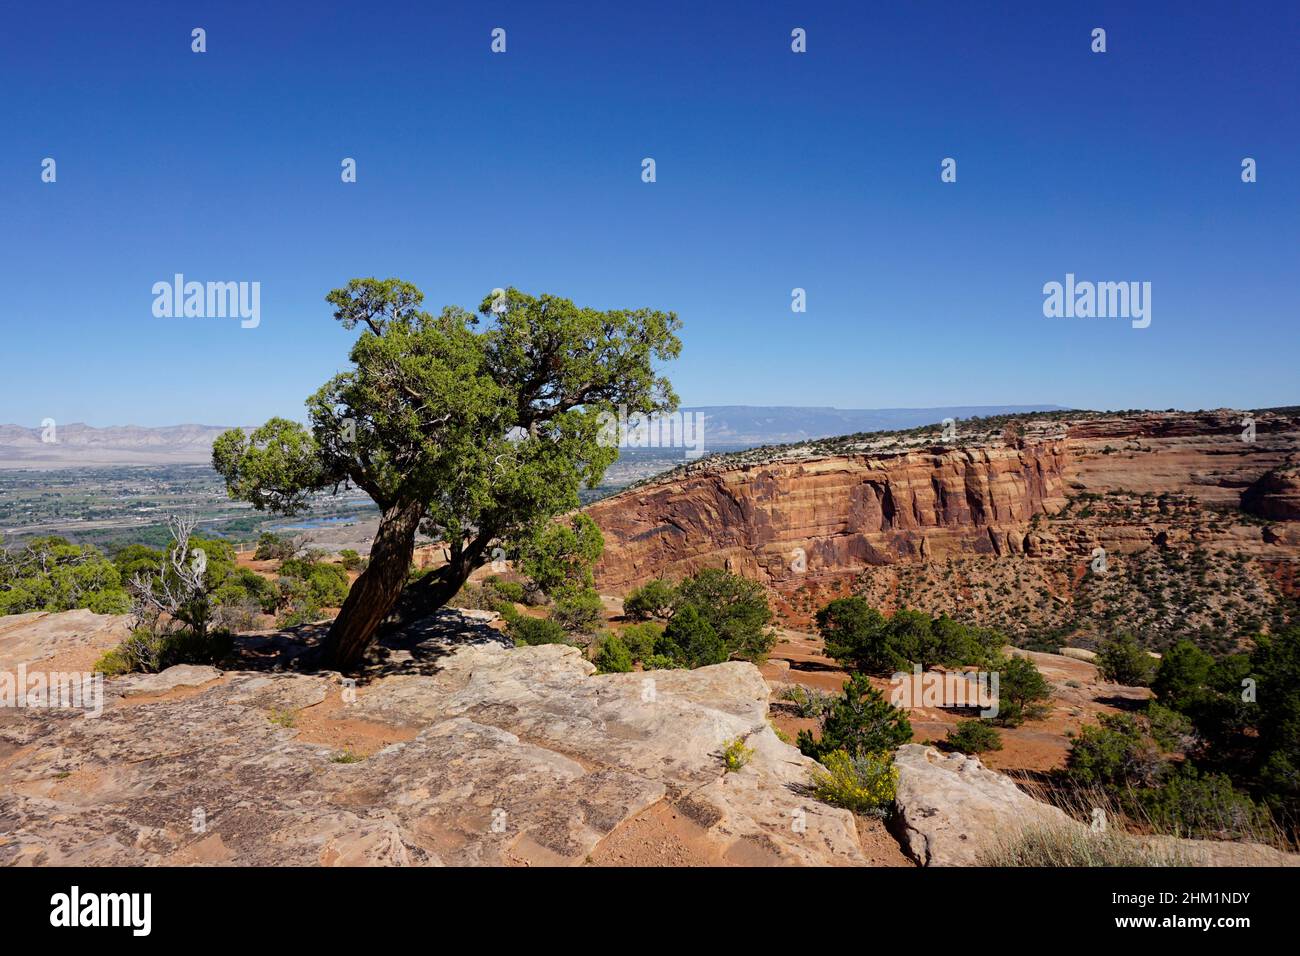 Un árbol de enebro verde que crece en los acantilados de roca roja del Monumento Nacional de Colorado bajo un cielo azul claro. Foto de stock